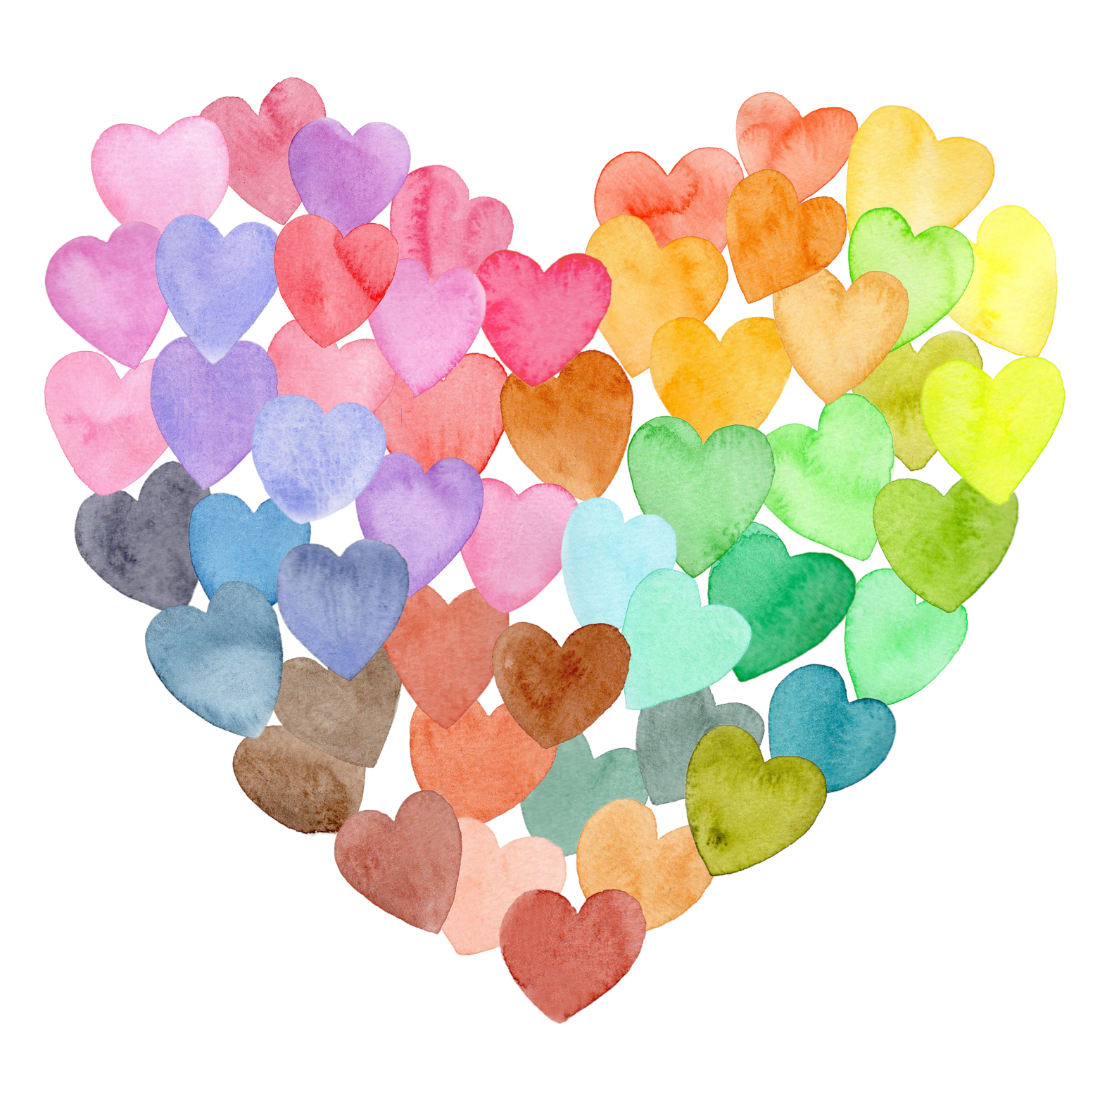 Illustratie van een hart tegen een doorzichtige, witte achtergrond. Het hart bestaat uit vele kleine harten in vele pastelkleuren.